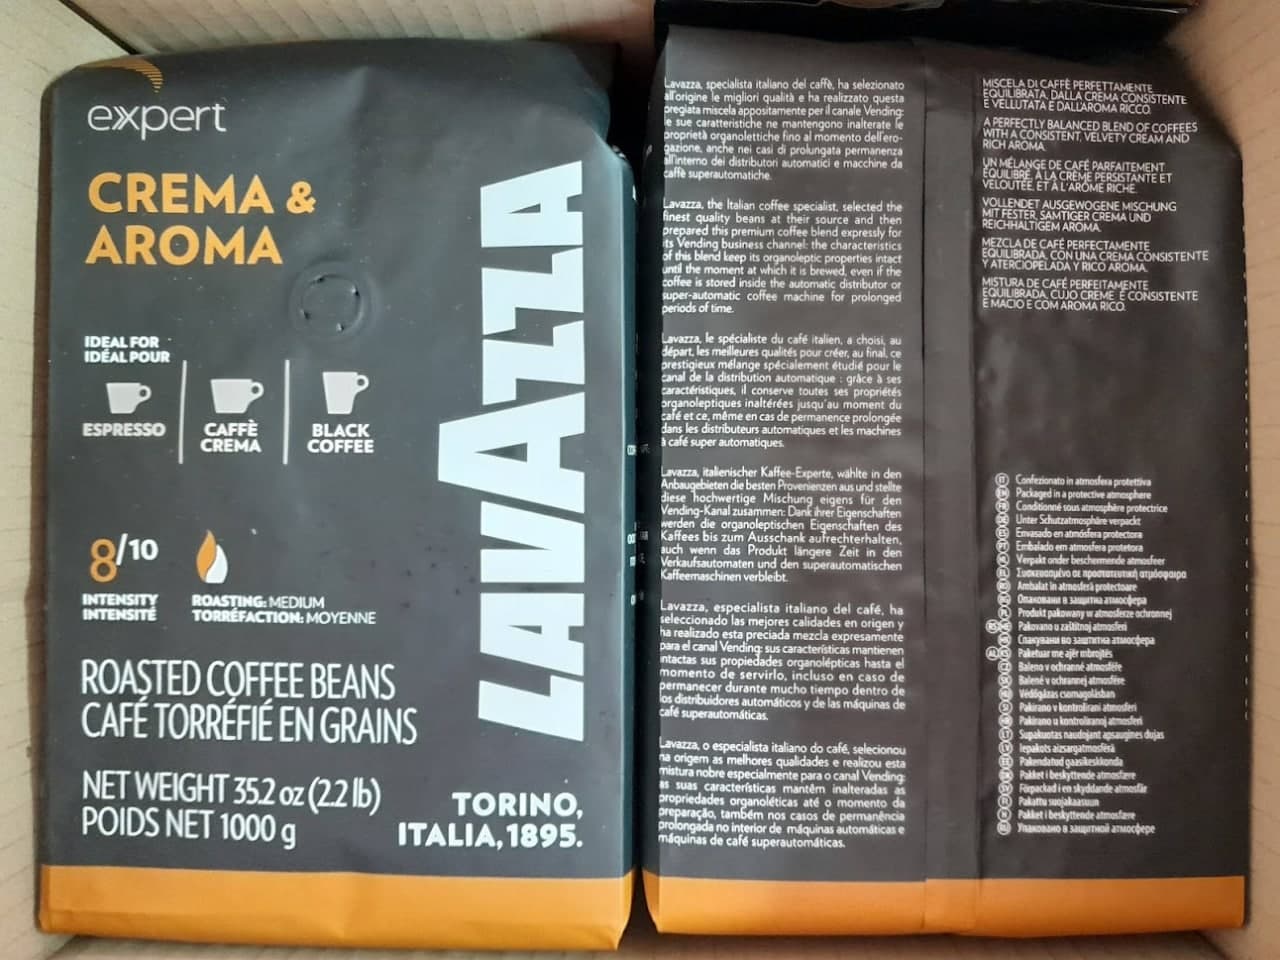 Pupiņu kafija "LAVAZZA" Expert Crema e Aroma